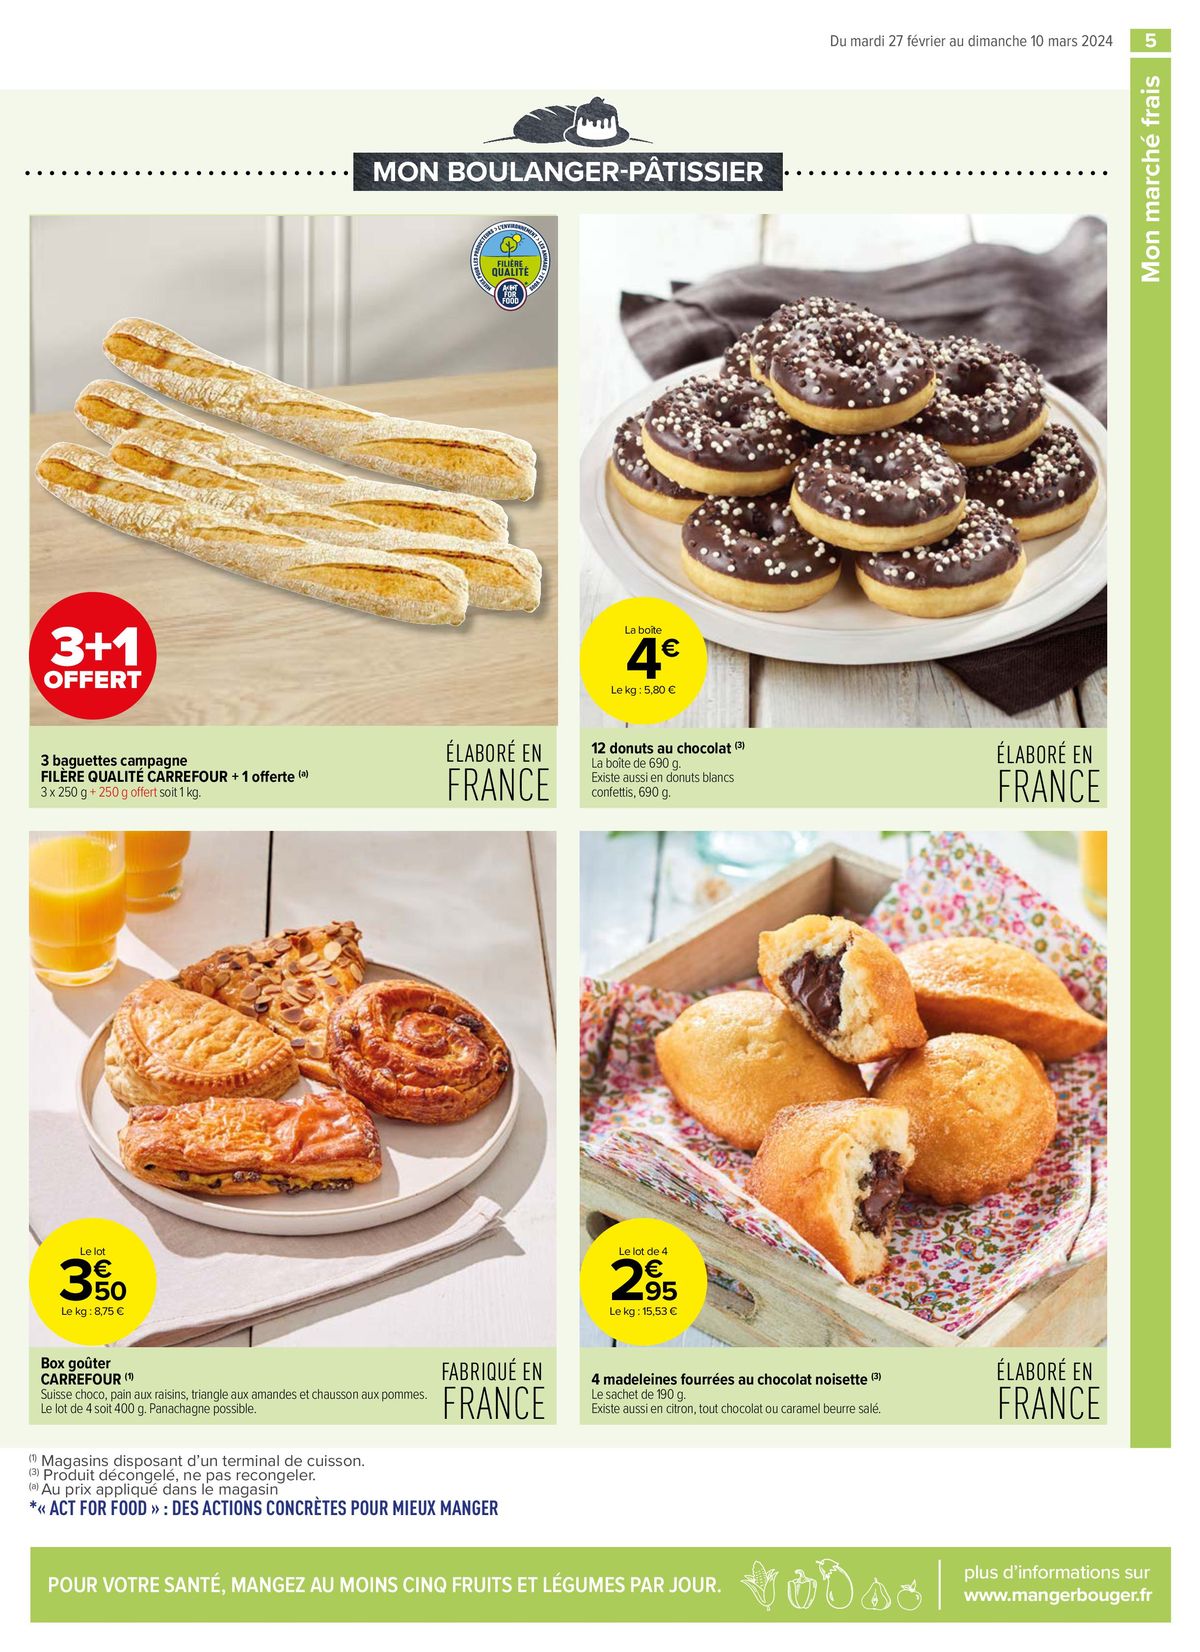 Catalogue Des promos pleines de gourmandises, page 00007